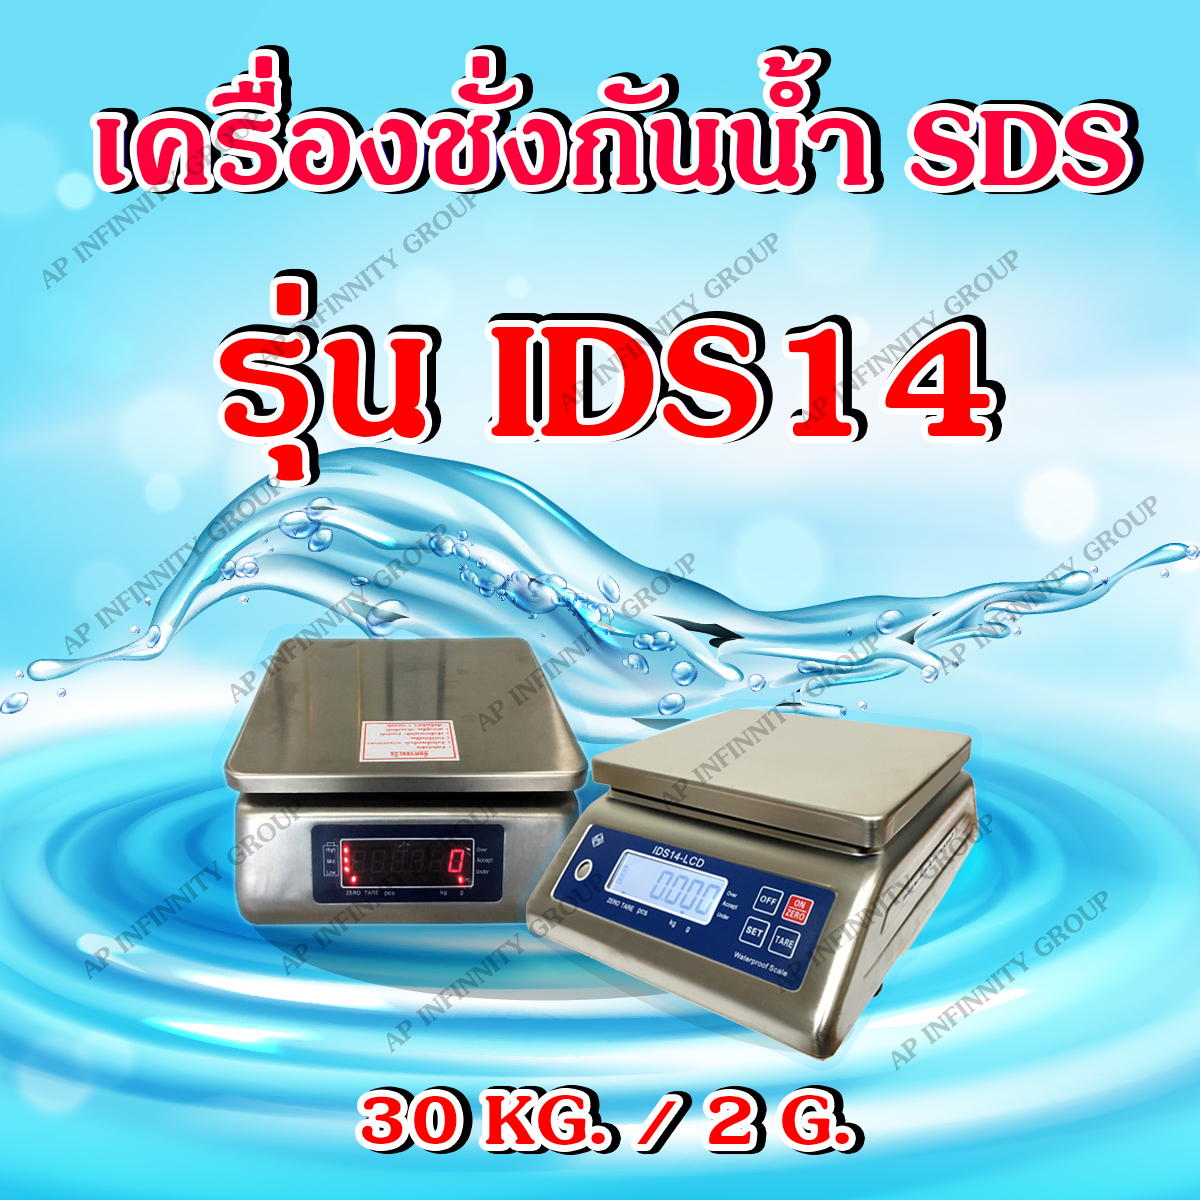 ตาชั่งดิจิตอลกันน้ำ เครื่องชั่งกันน้ำ แบบตั้งโต๊ะ ชั่งได้สูงสุด 30 กิโลกรัม ค่าละเอียด 2 กรัม ป้องกันน้ำและฝุ่นระดับ IP68 รุ่น : IDS-14 ยี่ห้อ : SDS ผ่านการตรวจรับรองโดยสำนักงานชั่งตวงวัด กระทรวงพาณิชย์ รูปที่ 1